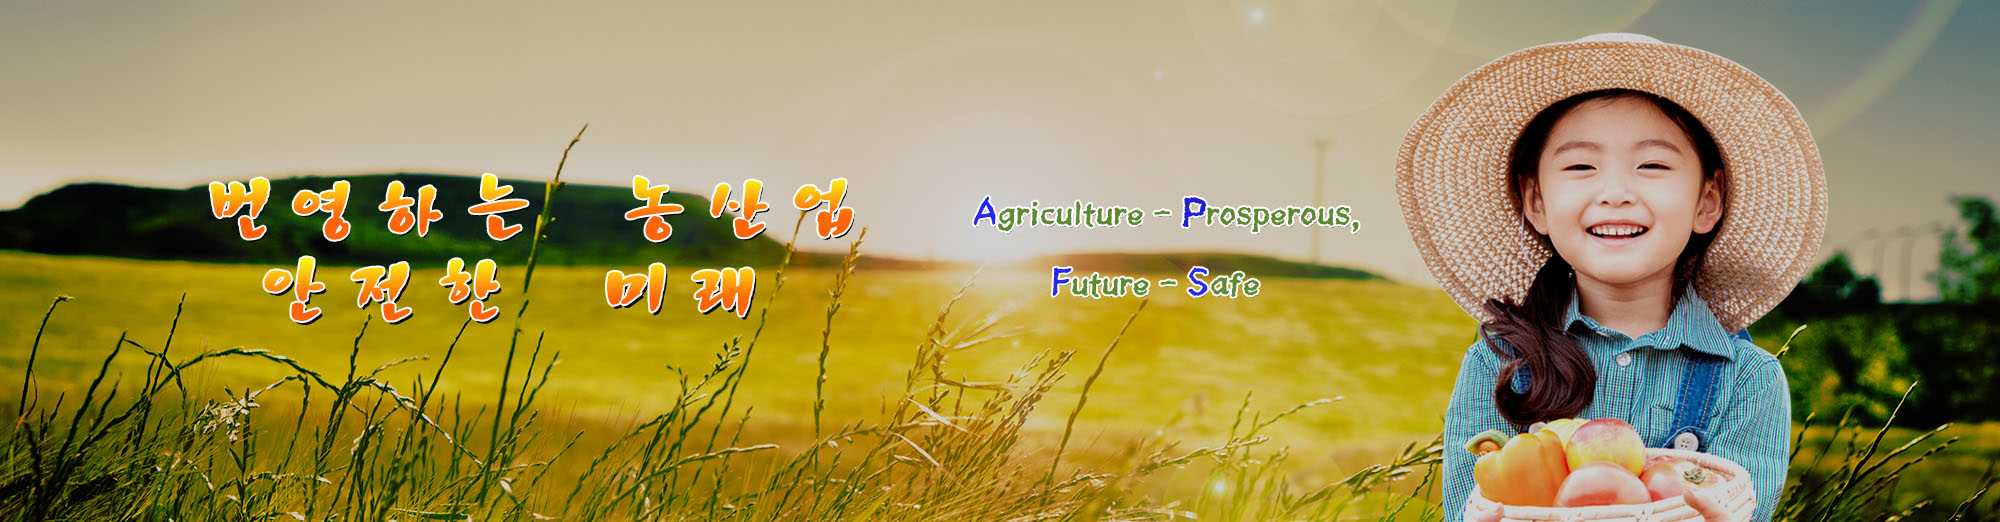 번영하는 농산업 - 안전한 미래 Agriculture Prosperous - Future Safe